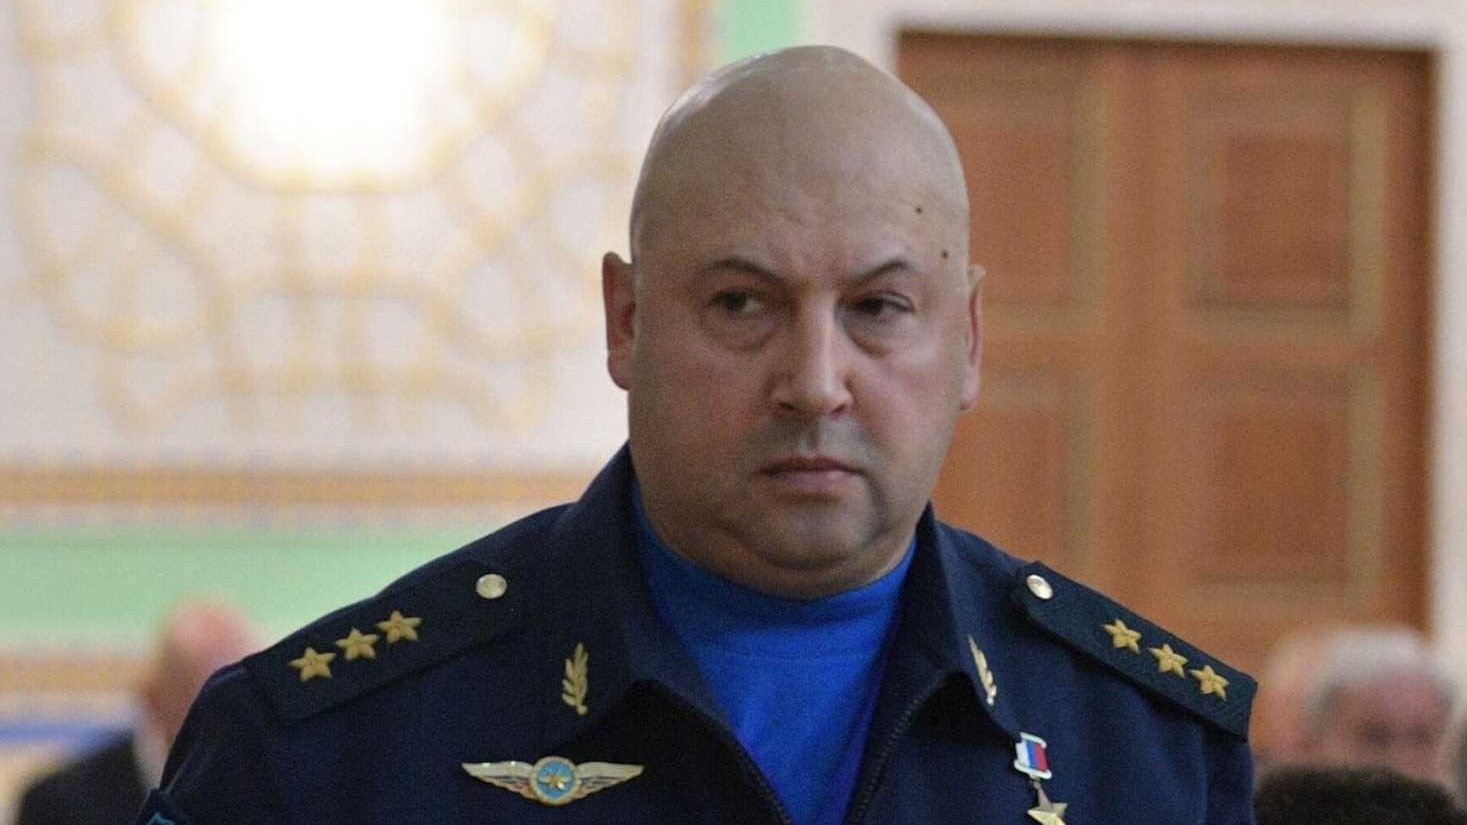 ОНК: Генерала армии Сергея Суровикина не содержат в московском СИЗО «Лефортово»